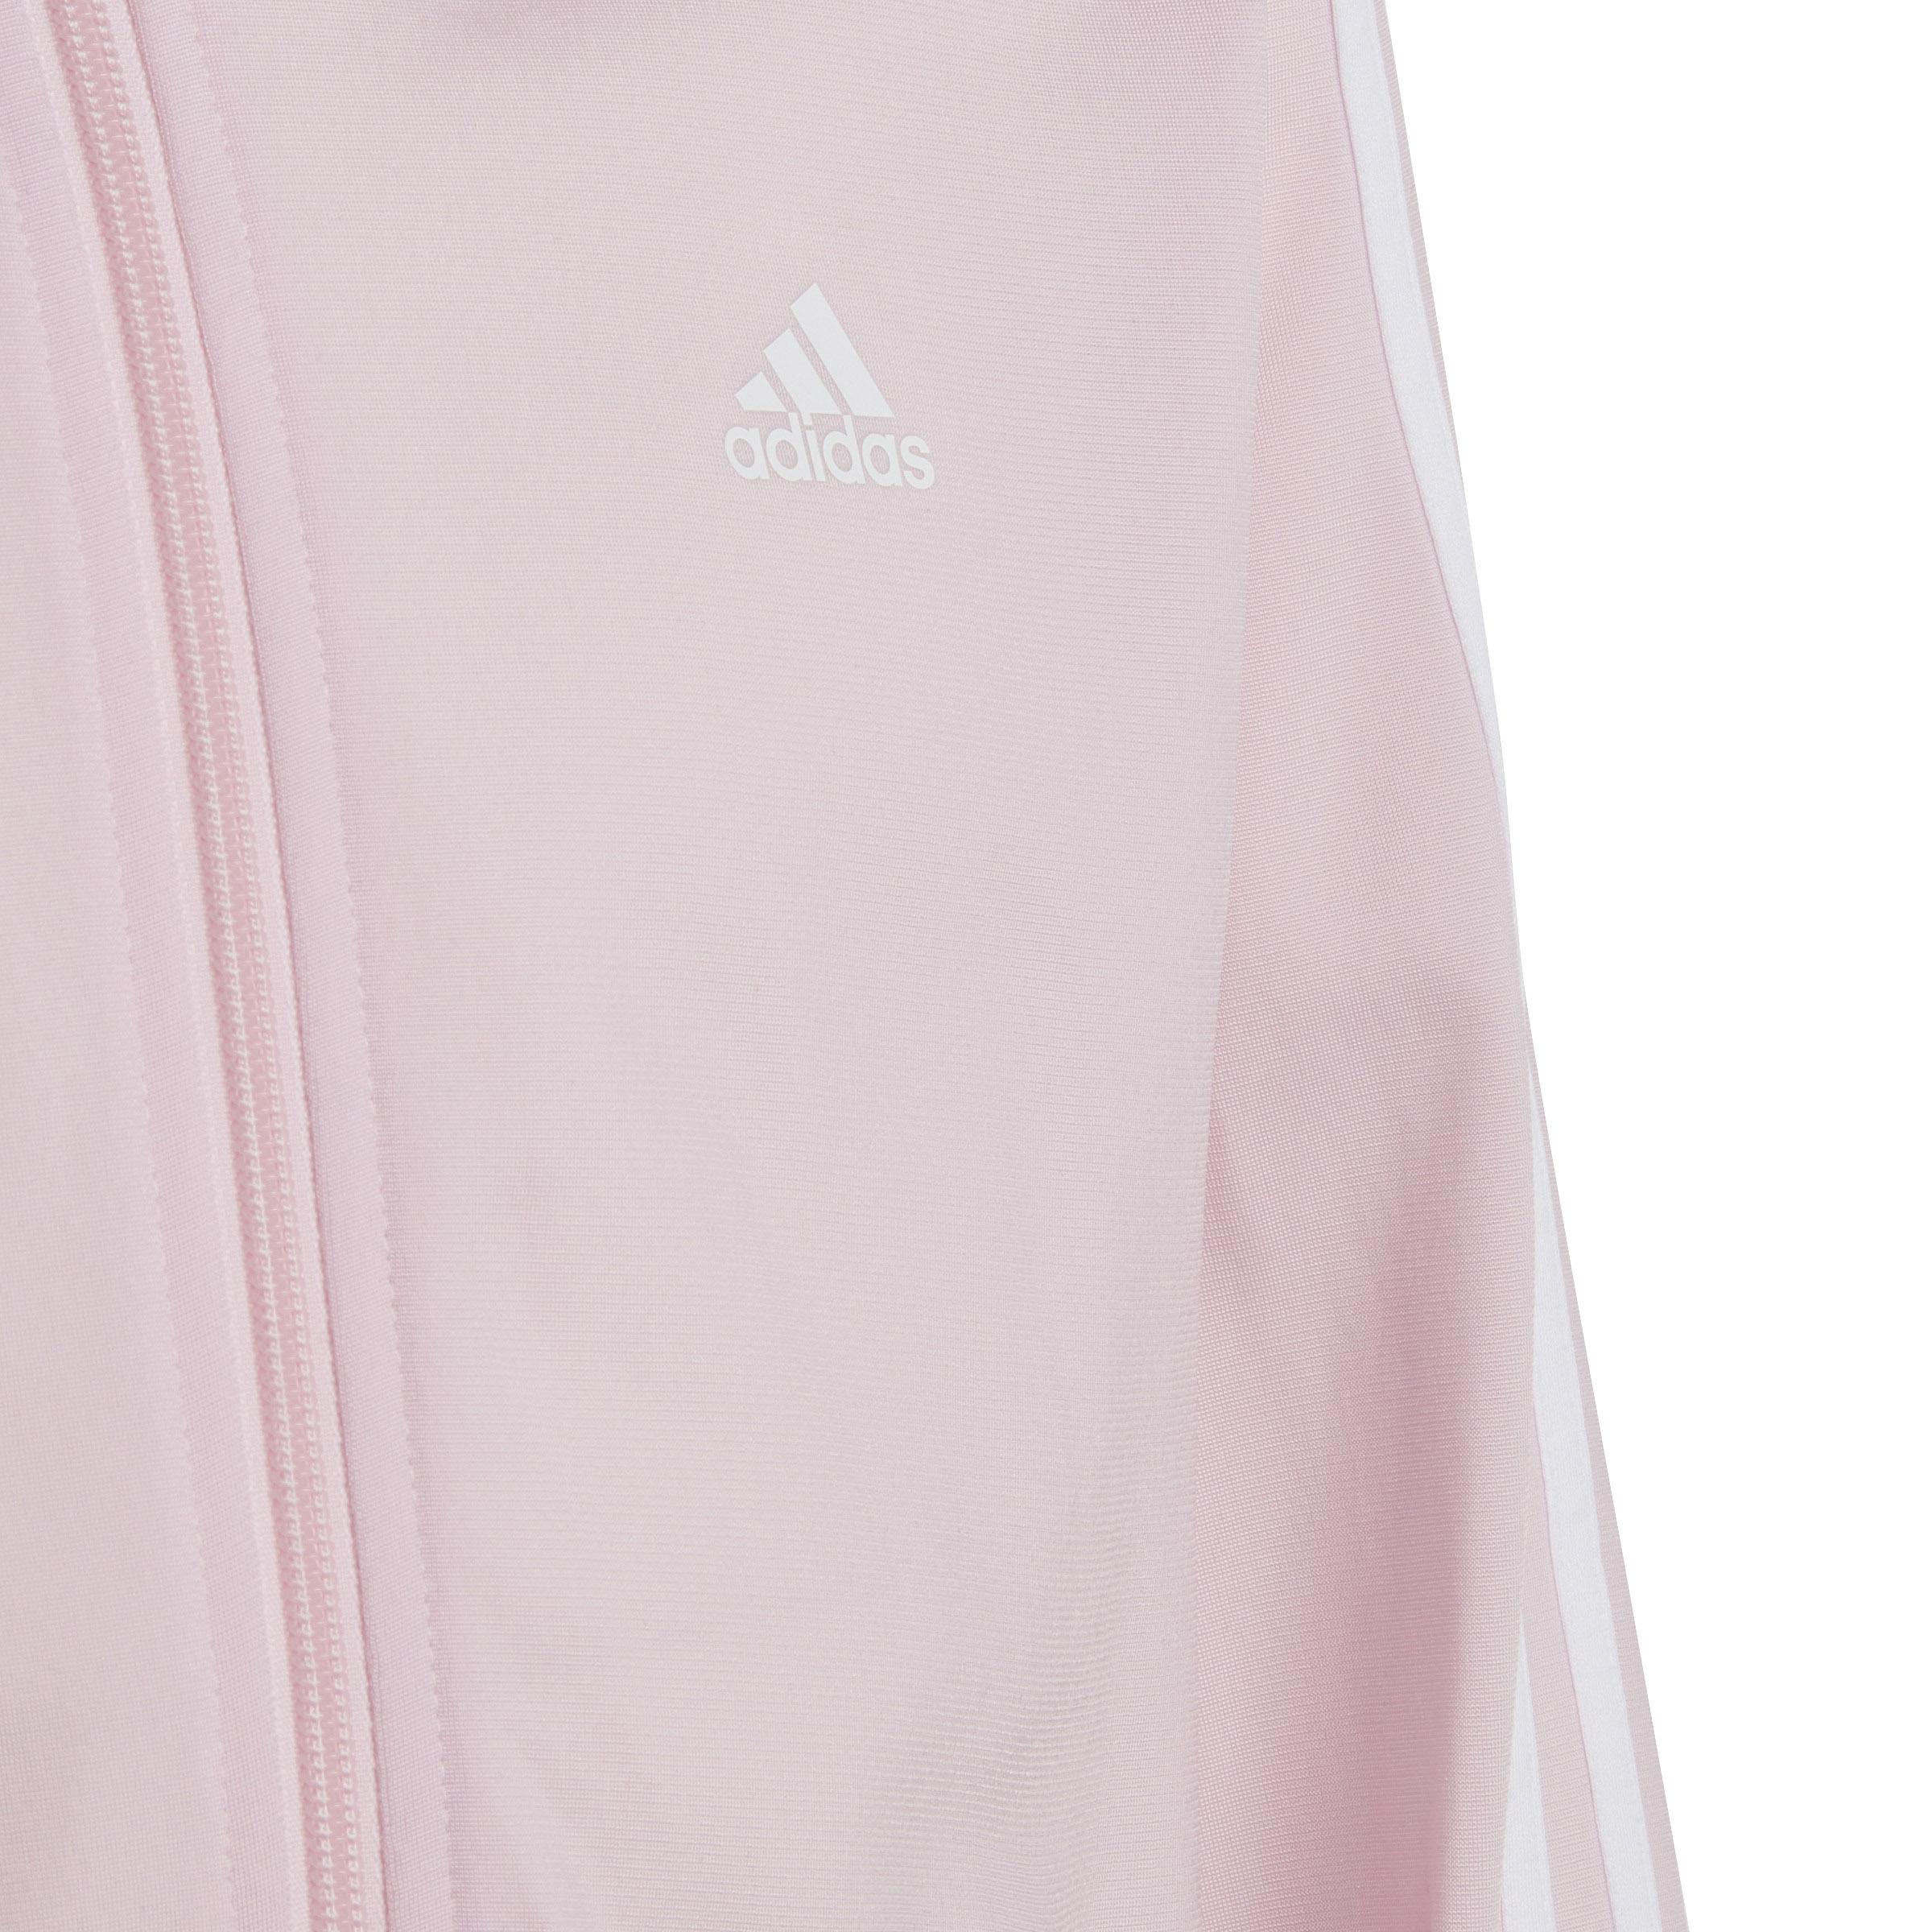 von pink-semi clear Online im Adidas Shop Mädchen SportScheck fuchsia-white lucid kaufen Trainingsanzug